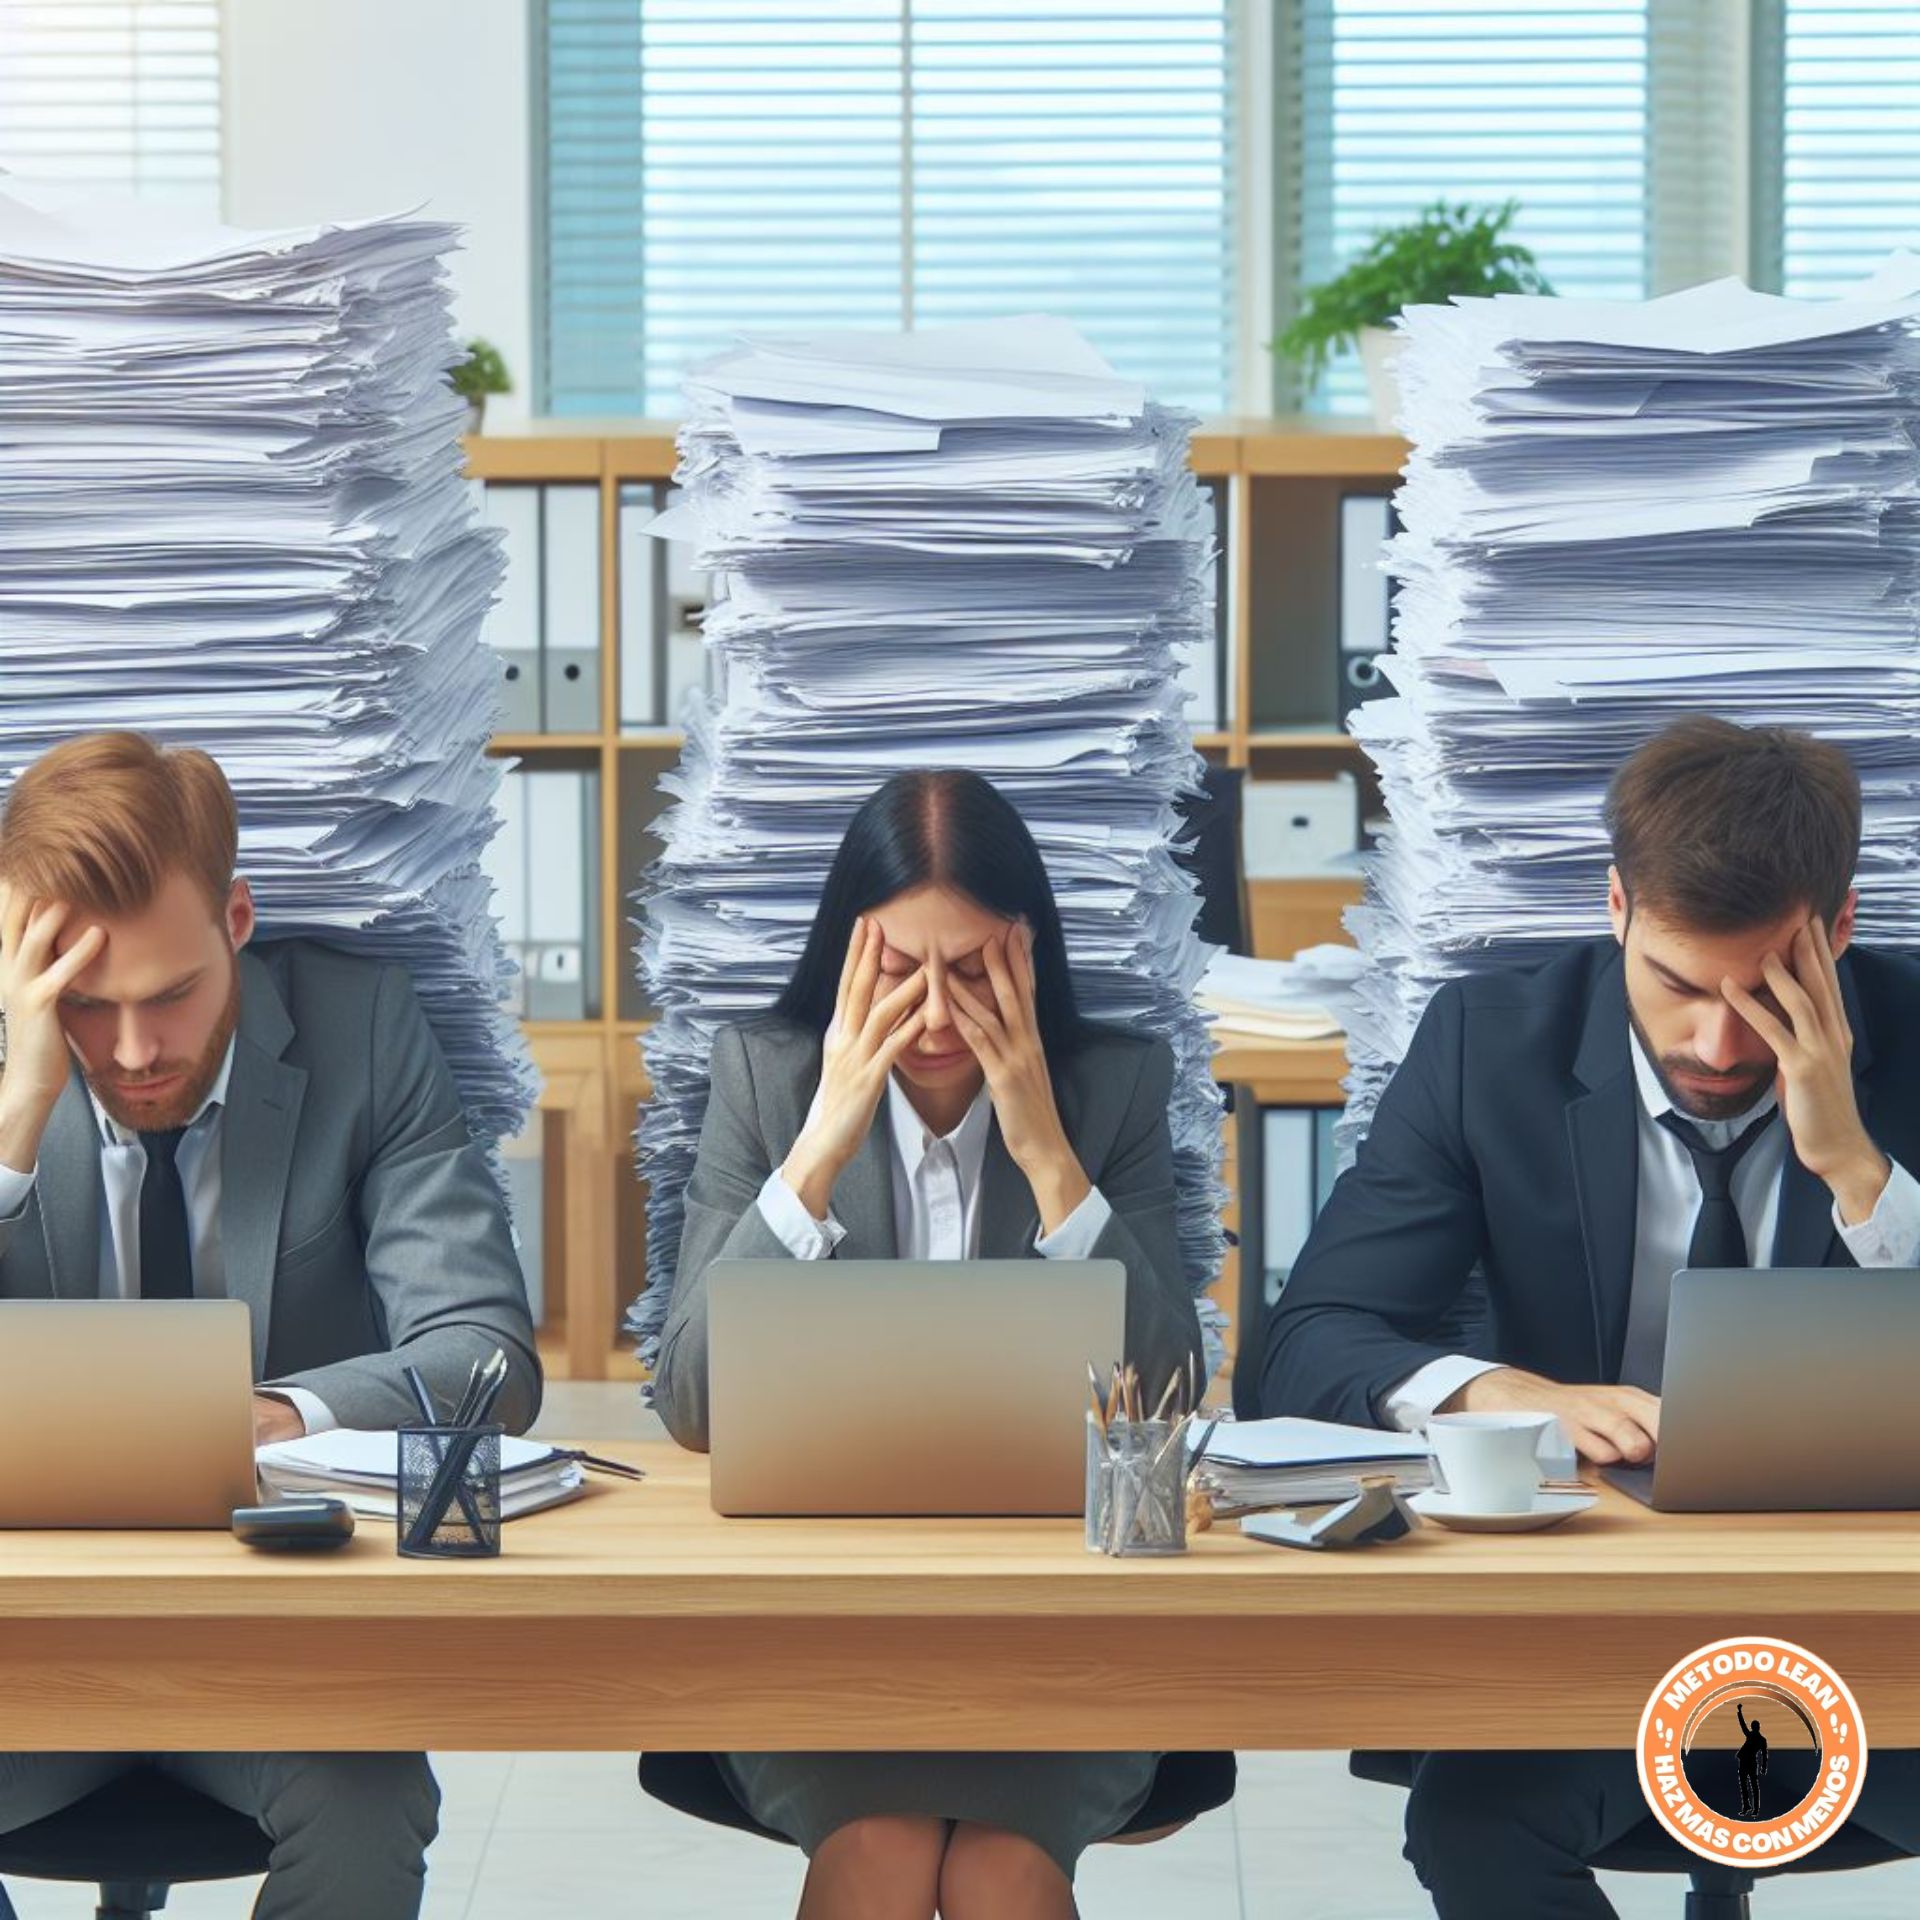 La sobrecarga de trabajo o muri puede estresar y agobiar a los trabajadores, lo cual repercute en su trabajo.